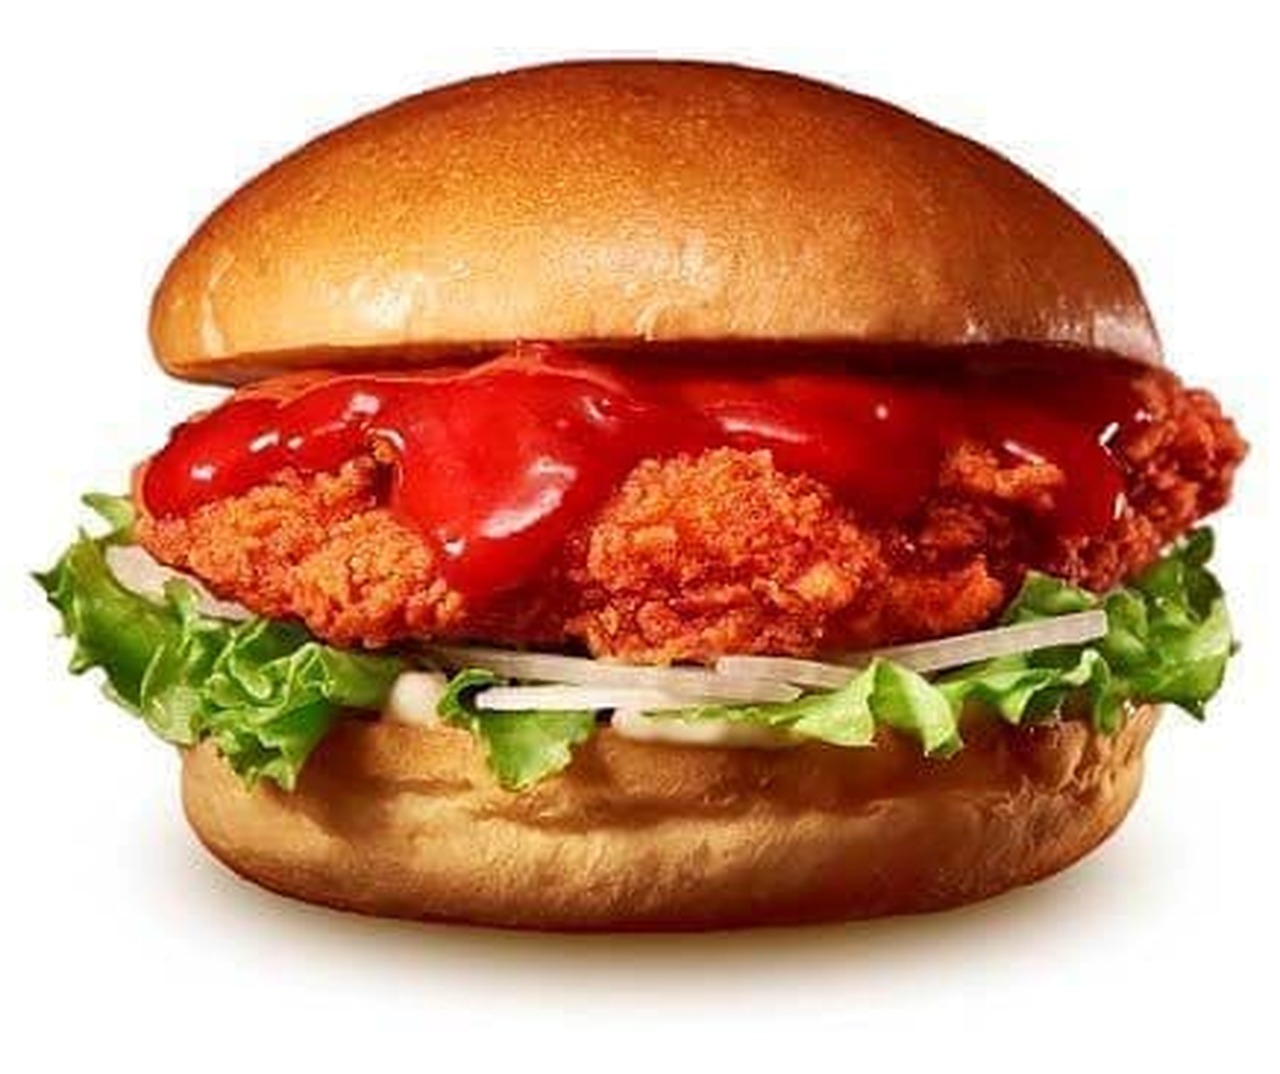 Lotteria "Crazy Hot Chicken Fillet Burger"